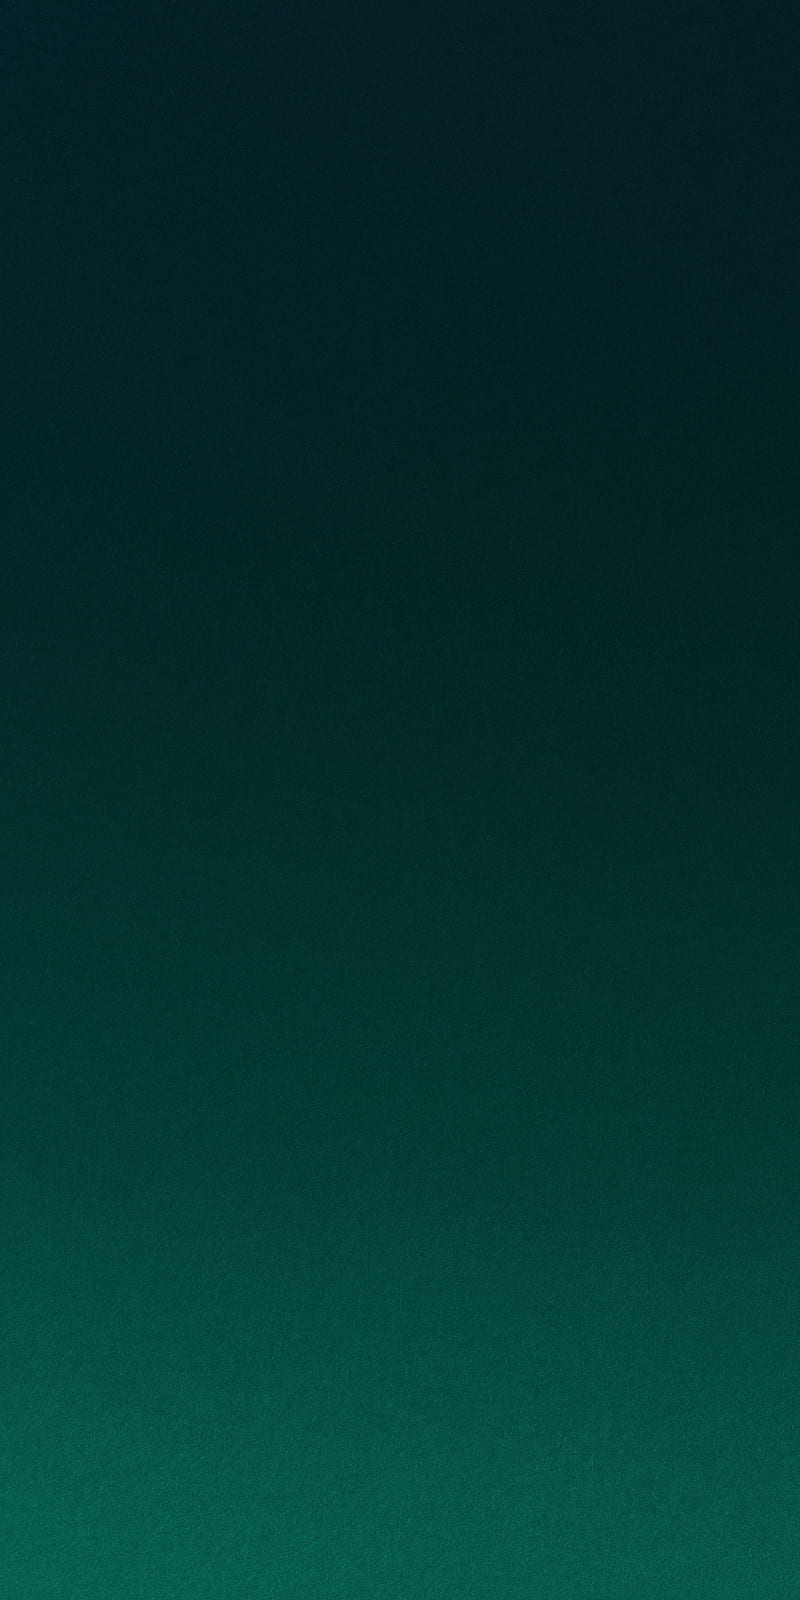 Green Accent, Android, Gradient, Fashion – nếu bạn yêu thích sự đổi mới và đang tìm kiếm một hình nền điện thoại độc đáo và sáng tạo, bức ảnh này chắc chắn sẽ làm bạn hài lòng. Thiết kế sử dụng màu xanh lá cây cùng với hiệu ứng Gradient sẽ tạo nên một phong cách thời trang và độc đáo. 